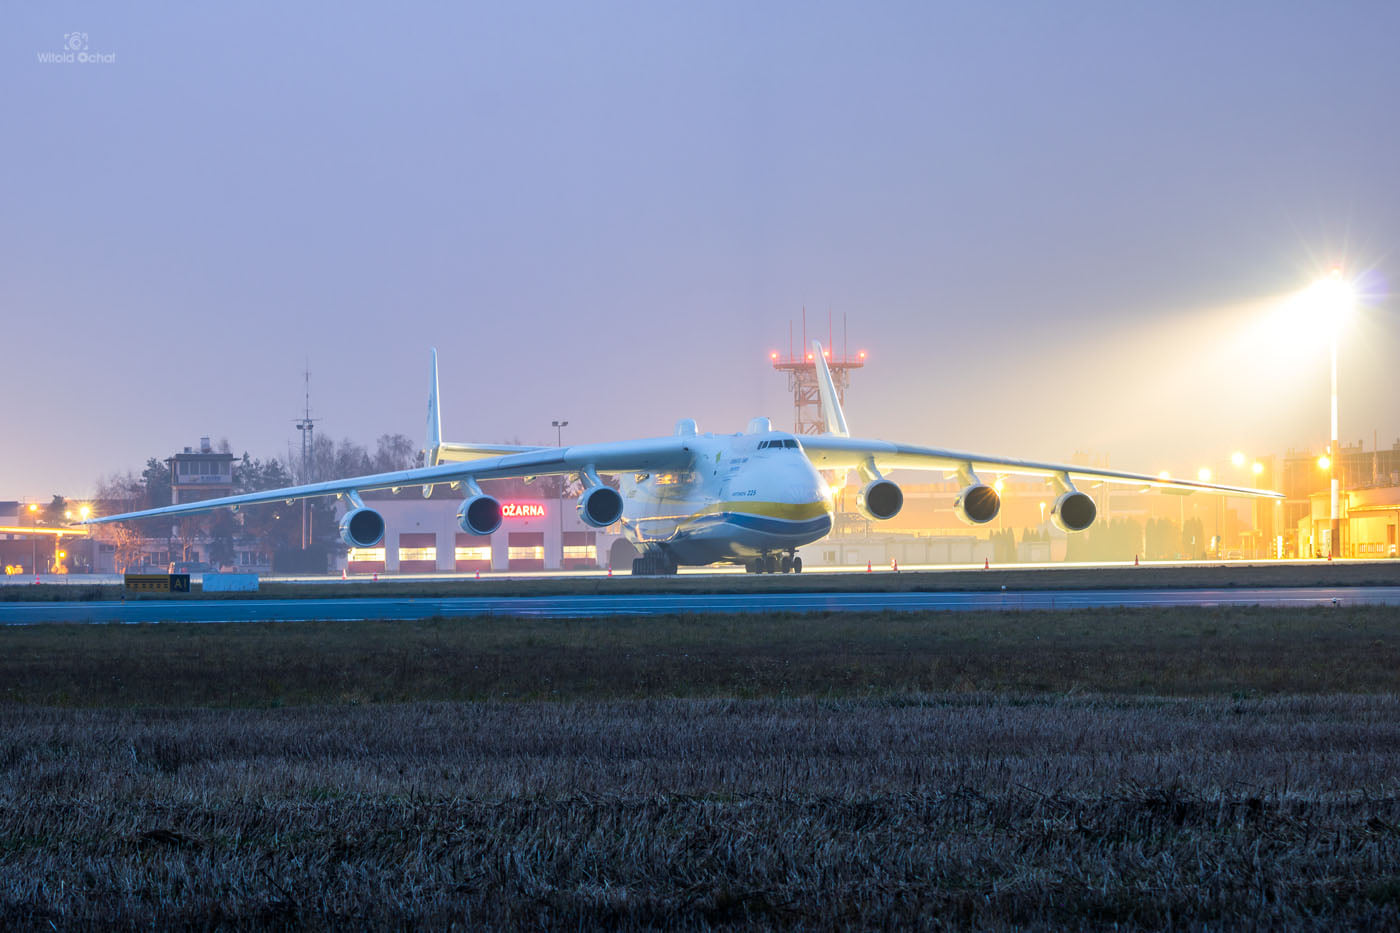 Gigantyczny samolot An-225 Mrija wylądował [ŚLEDŹ NA ŻYWO, WIDEO] - Zdjęcie główne